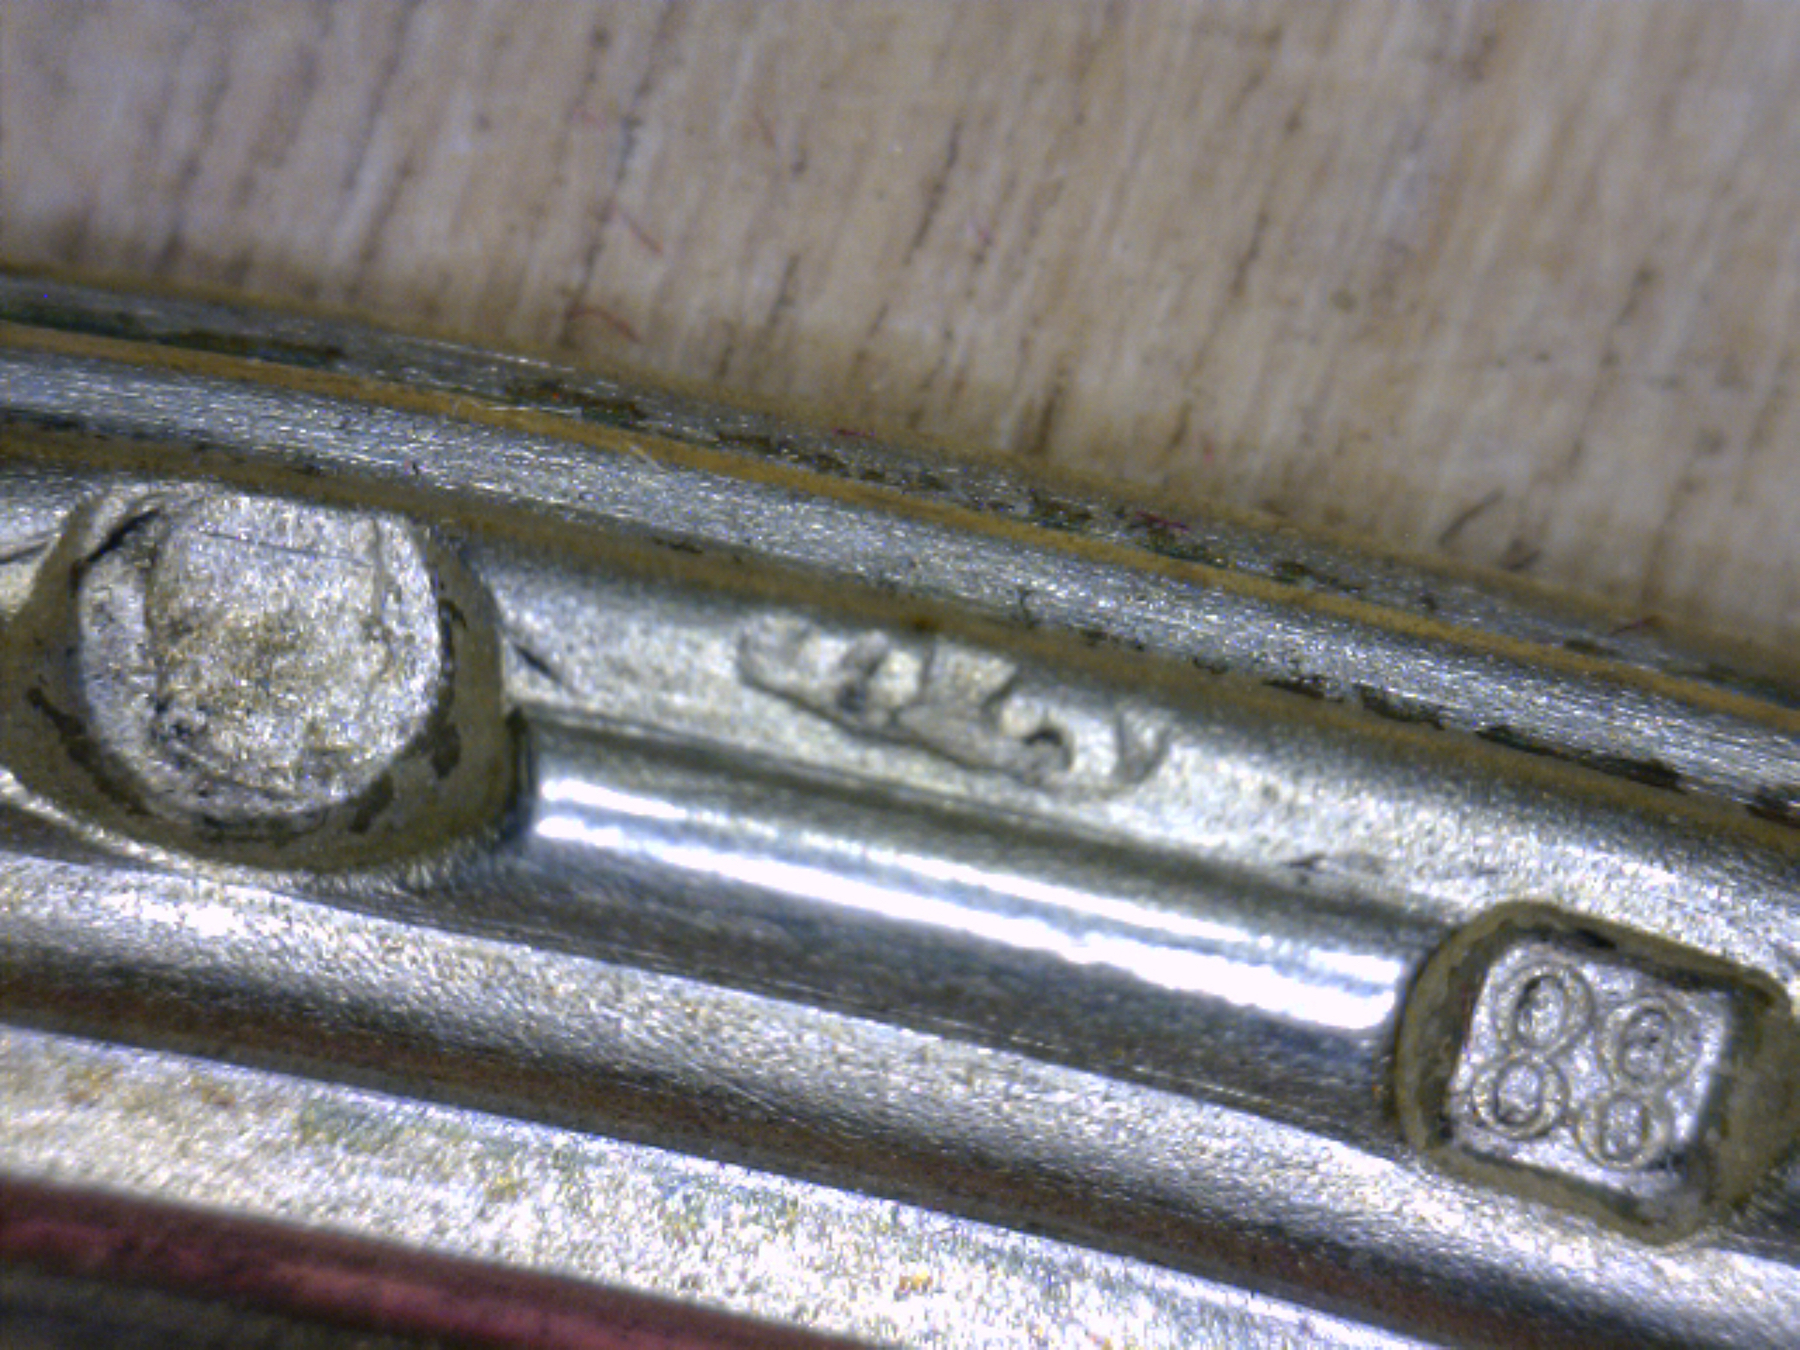 A Fabergé Wood Silver-Gilt and Guilloché Enamel Photograph Frame